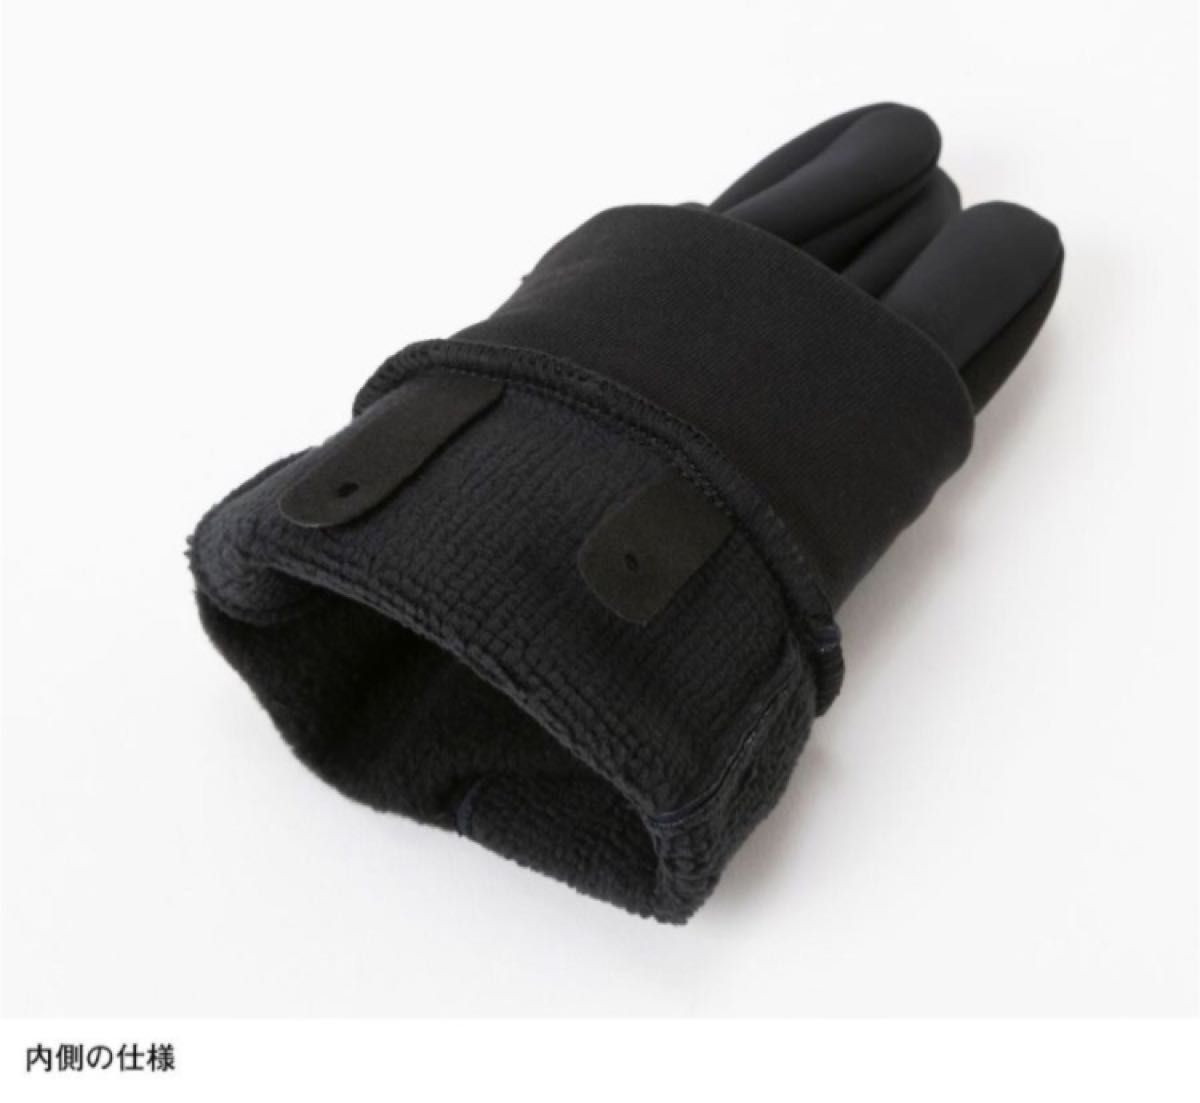 【 XL 】ウインドストッパーイーチップグローブ★ネイビー★ノースフェイス 手袋